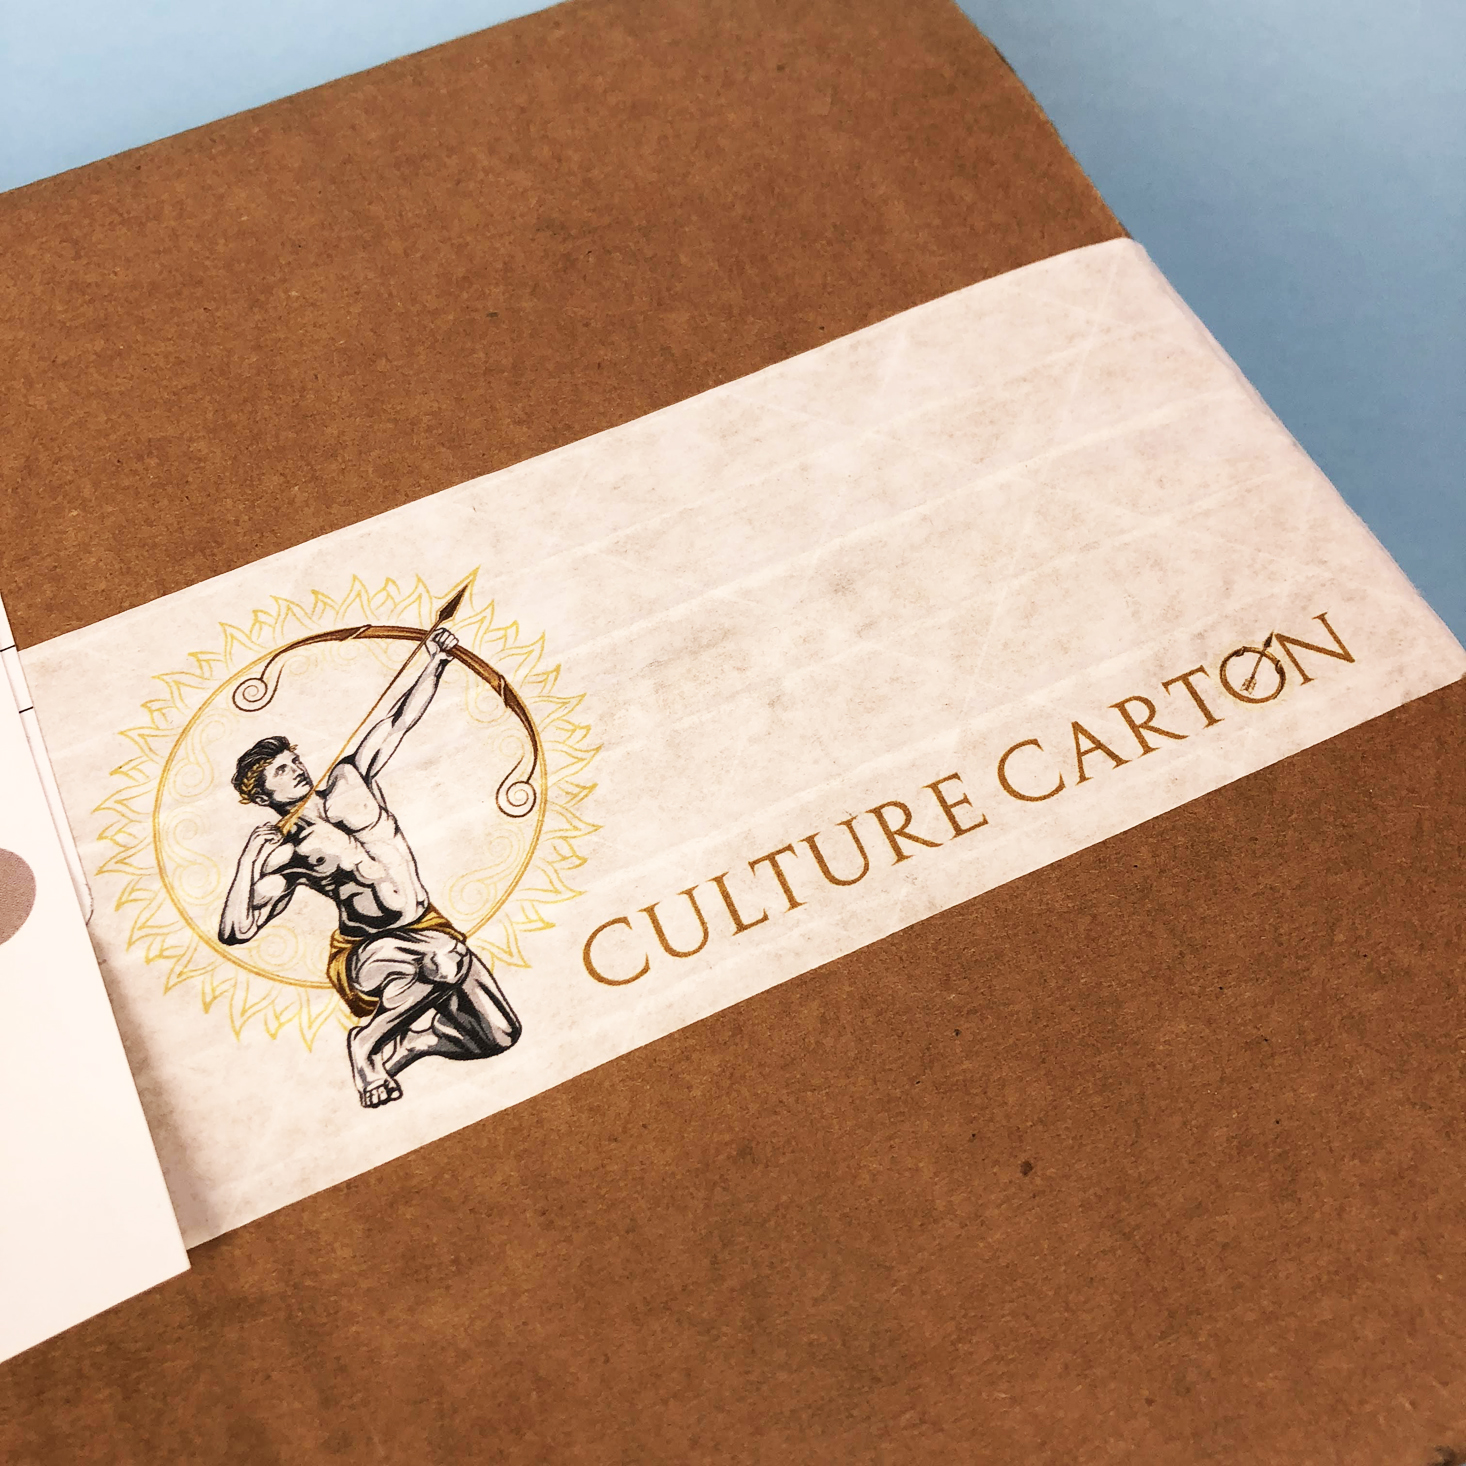 Culture Carton Men’s Subscription Box Review + Coupon – June 2018